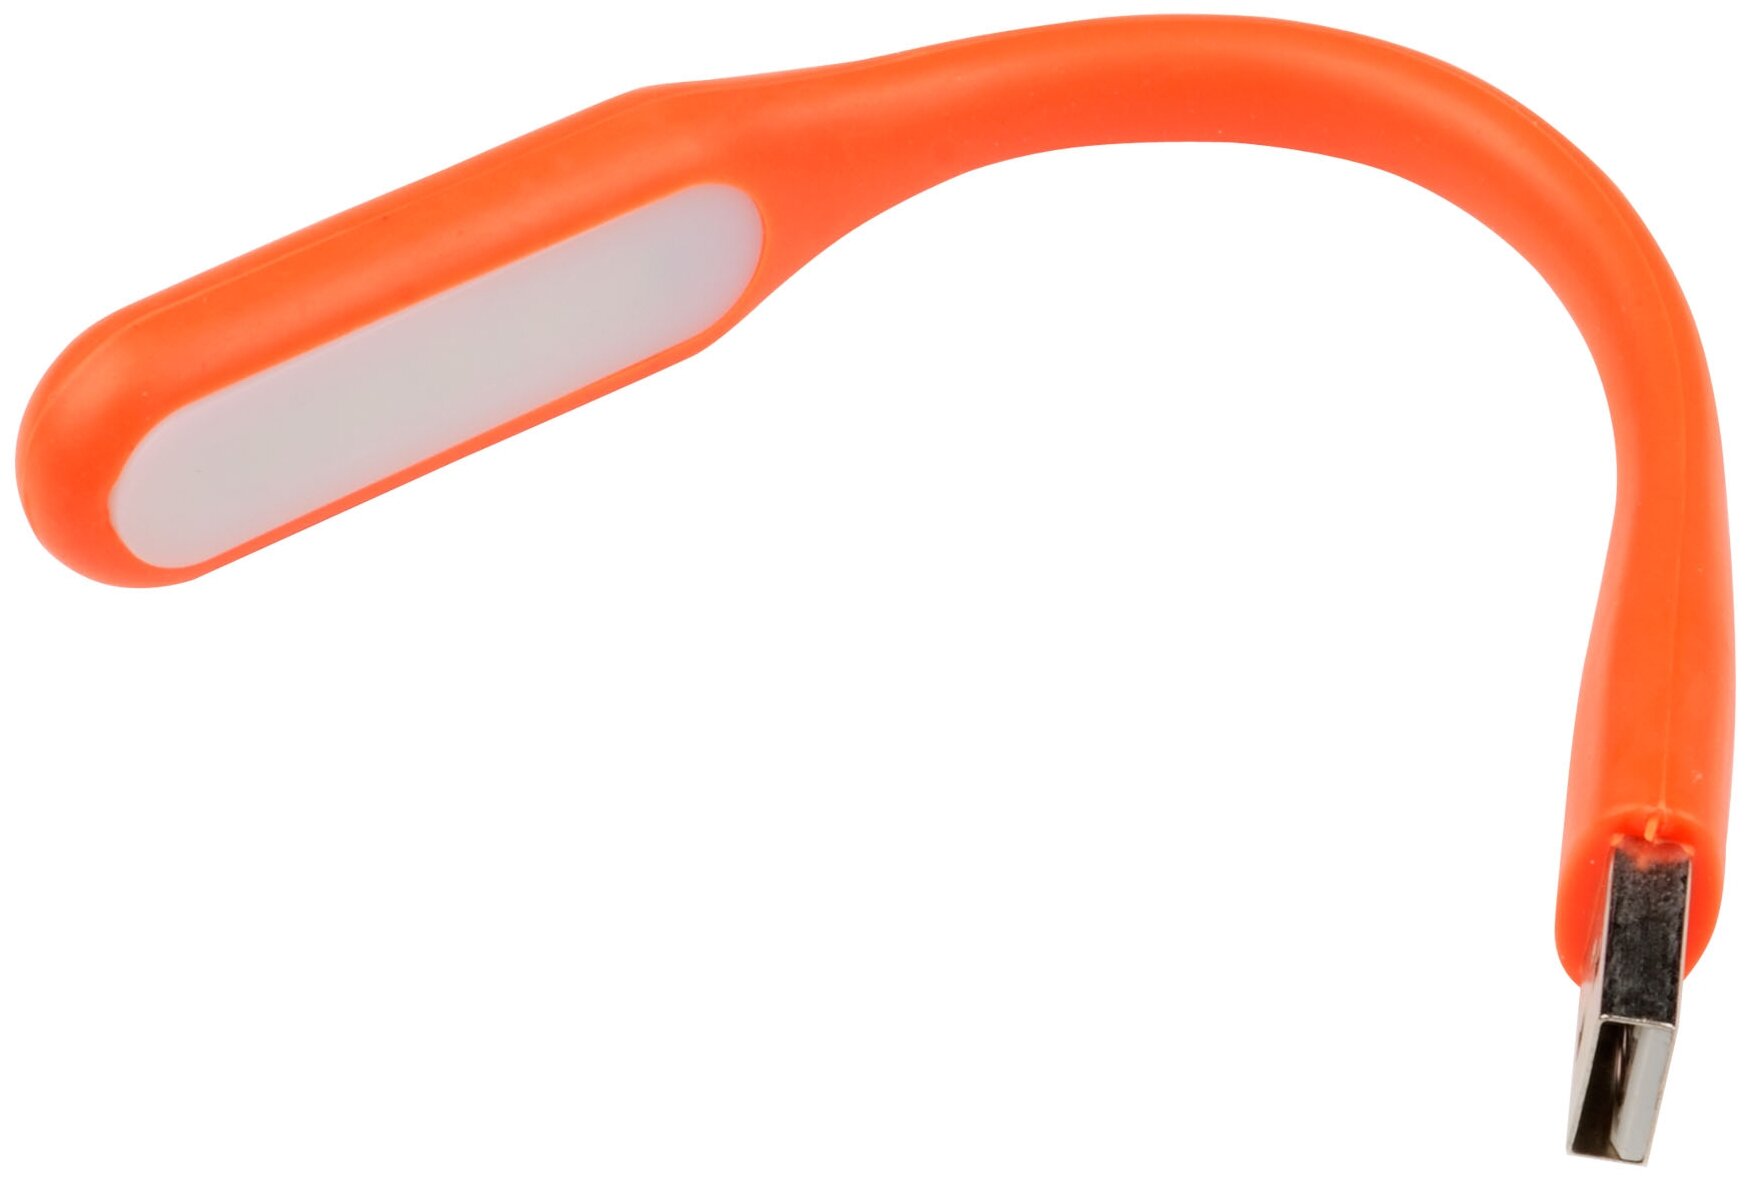 Uniel TLD-541 Orange св-к USB для ноутбука св/д 6W(260lm) резина/пластик 170x15 оранжевый